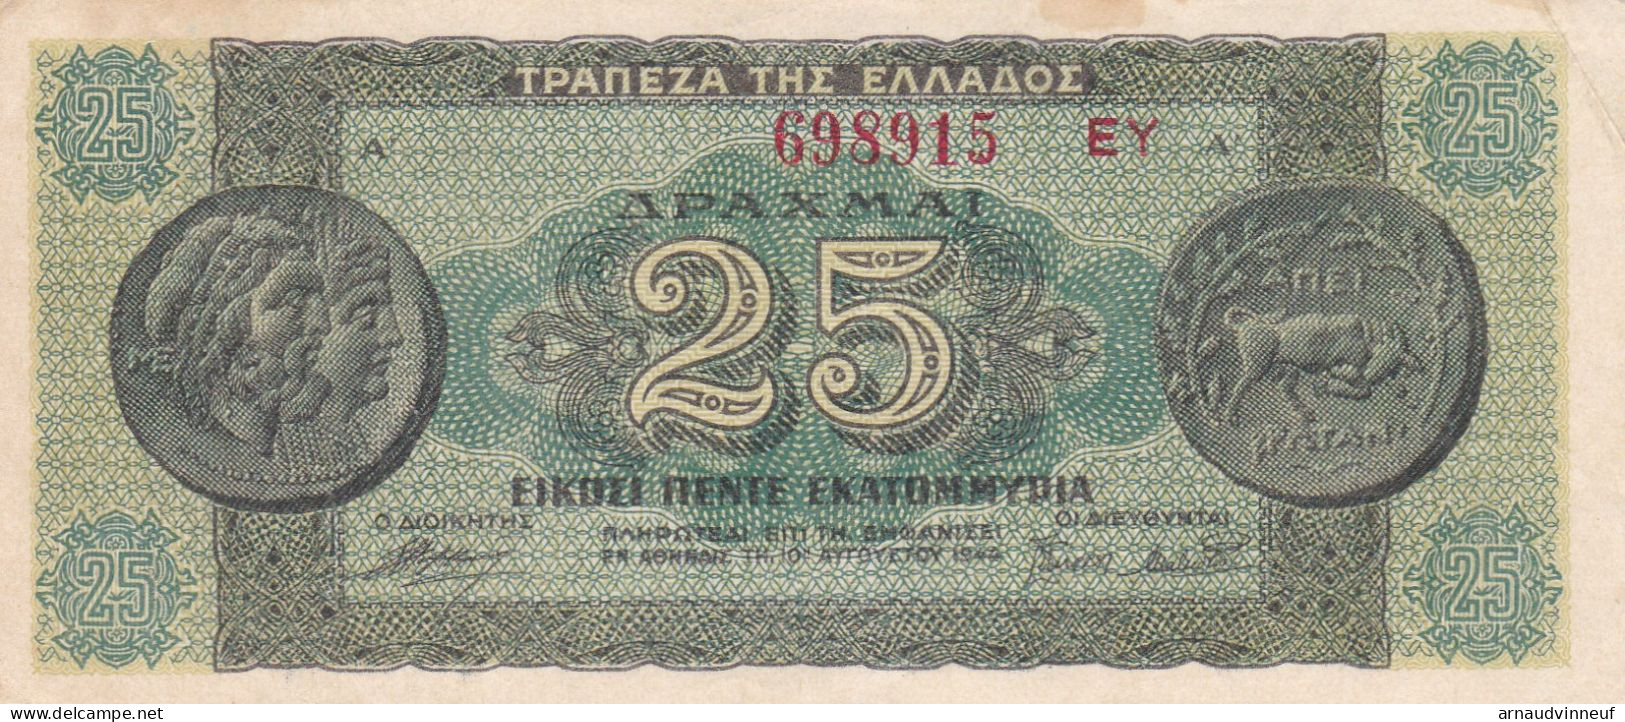 BILLET 25 EKATOMMYPIA - Greece